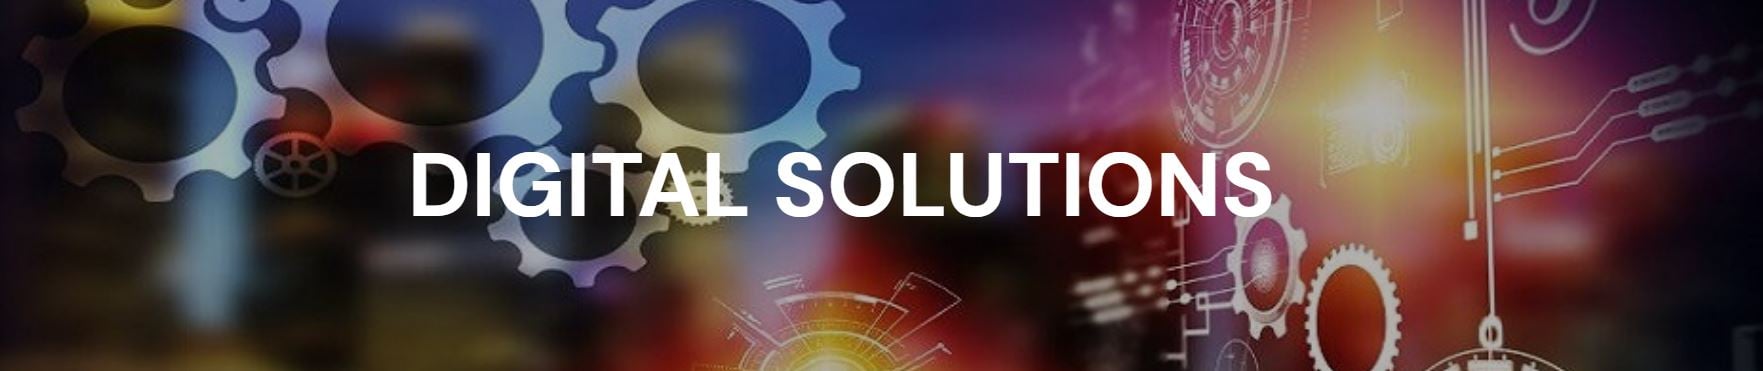 digital solutions header